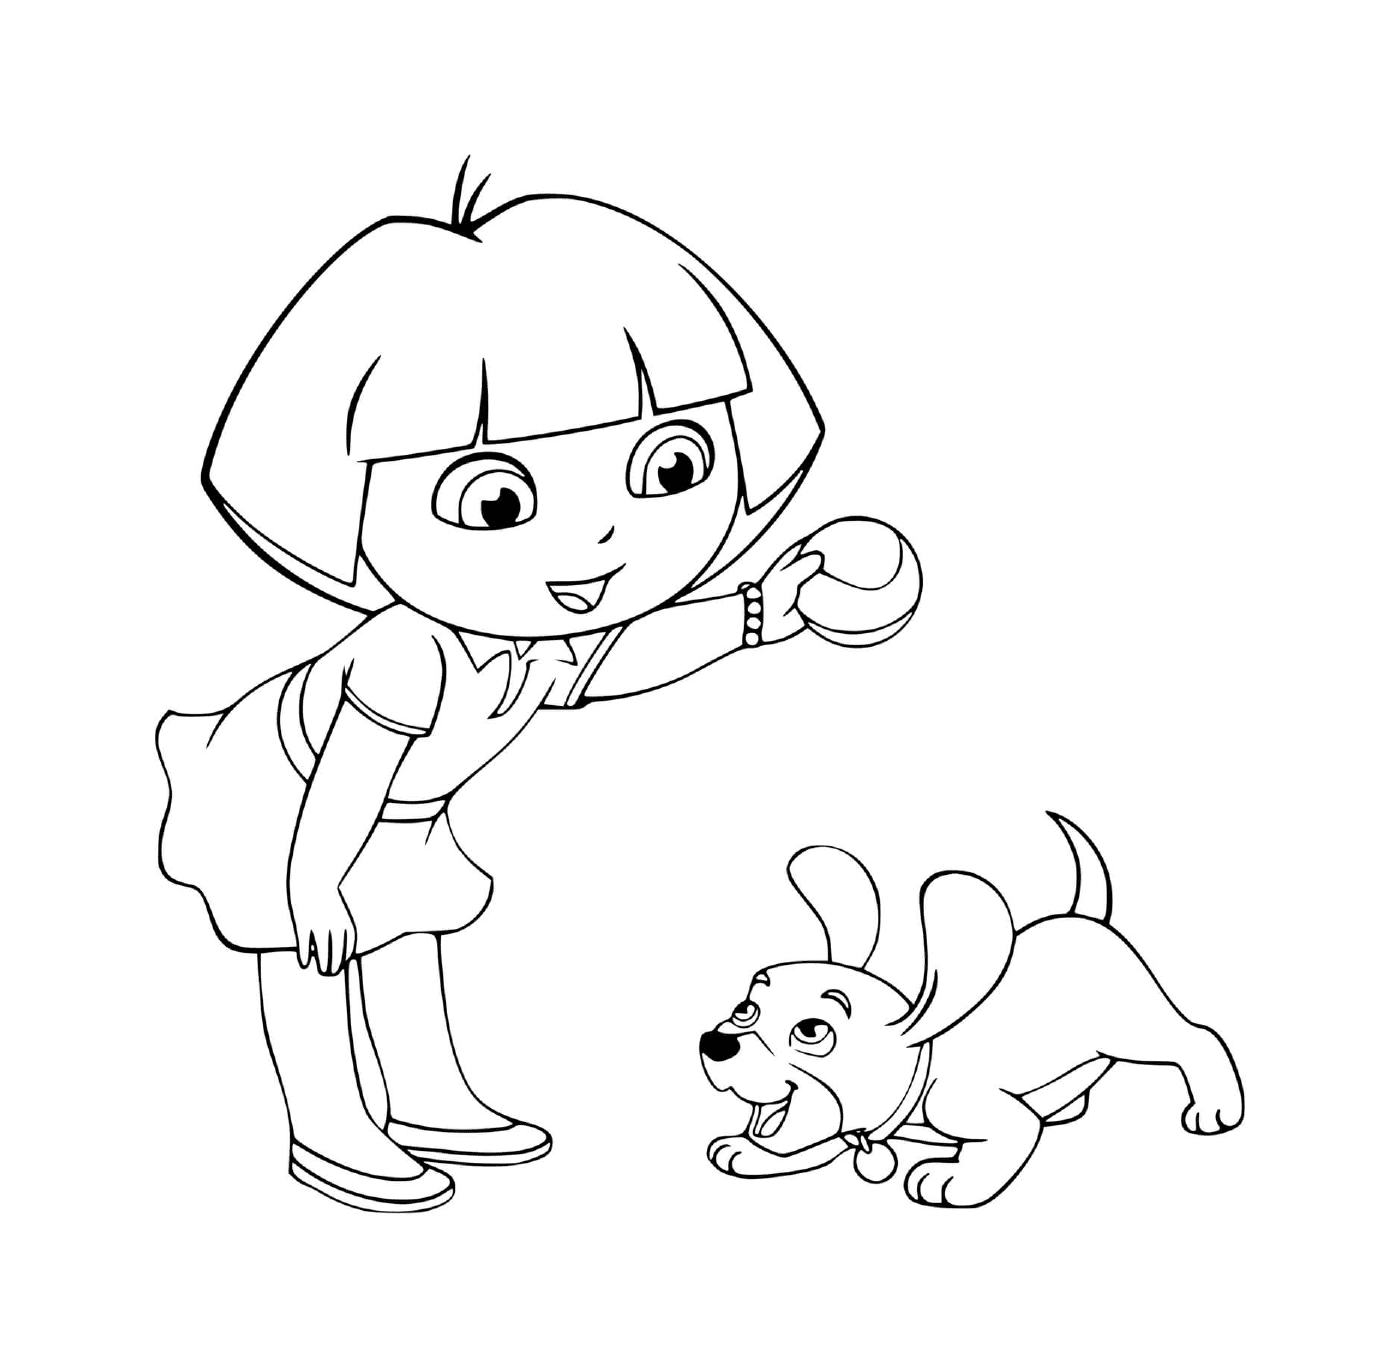  Dora juega a la pelota con su perro con alegría 